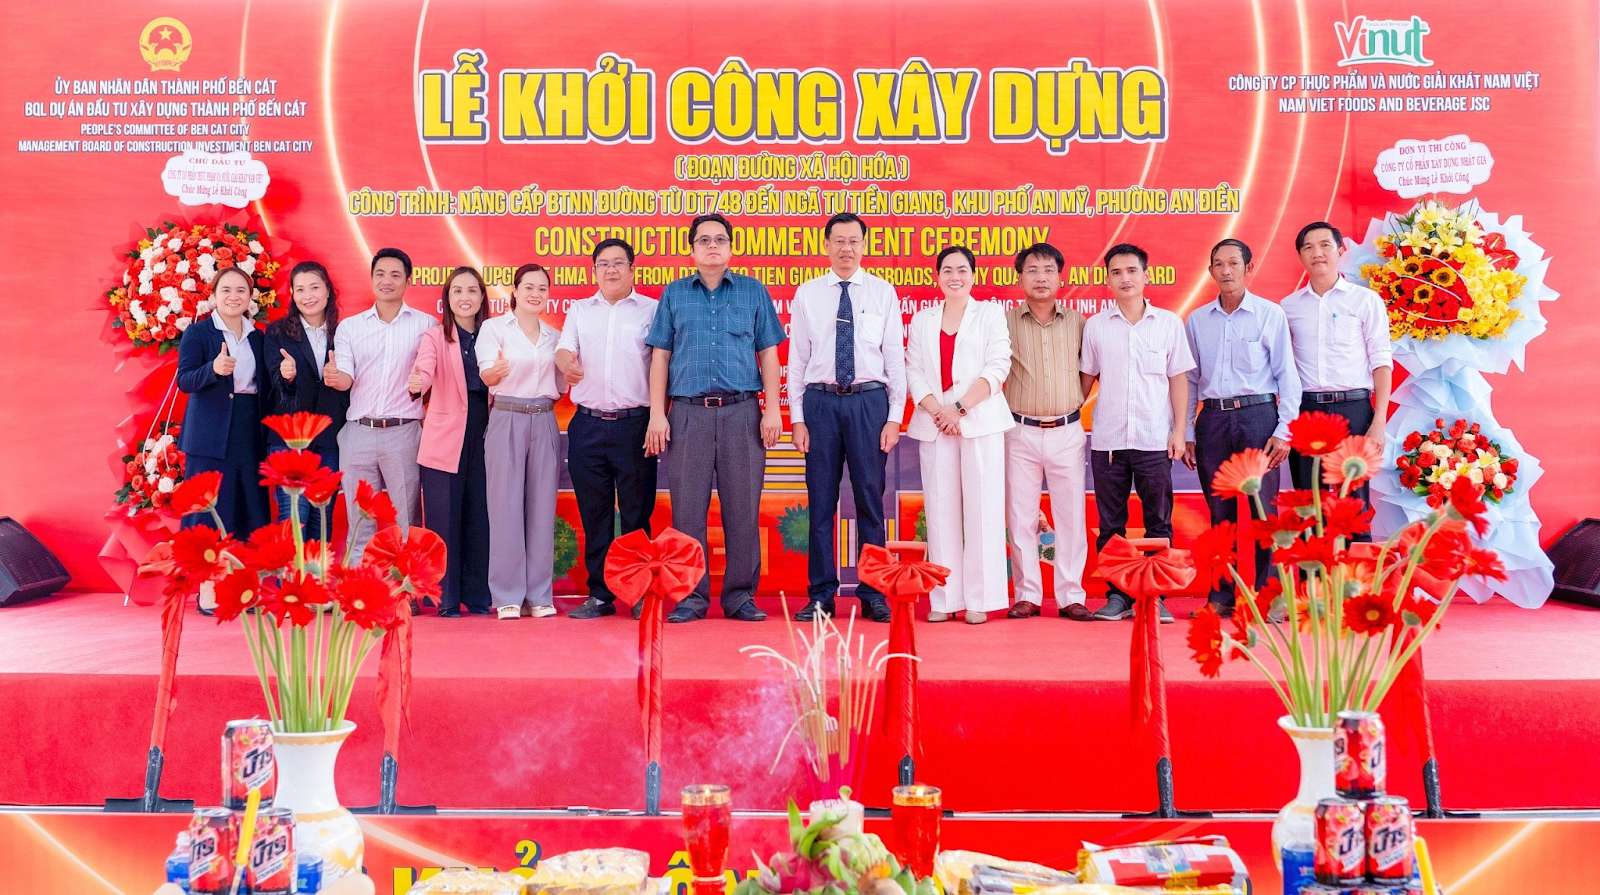 Lễ khởi công xây dựng đoạn đường xã hội hóa giữa UBND Thành phố Bến Cát và Công ty cổ phần Thực phẩm & Nước giải khát Nam Việt - Ảnh: VINUT